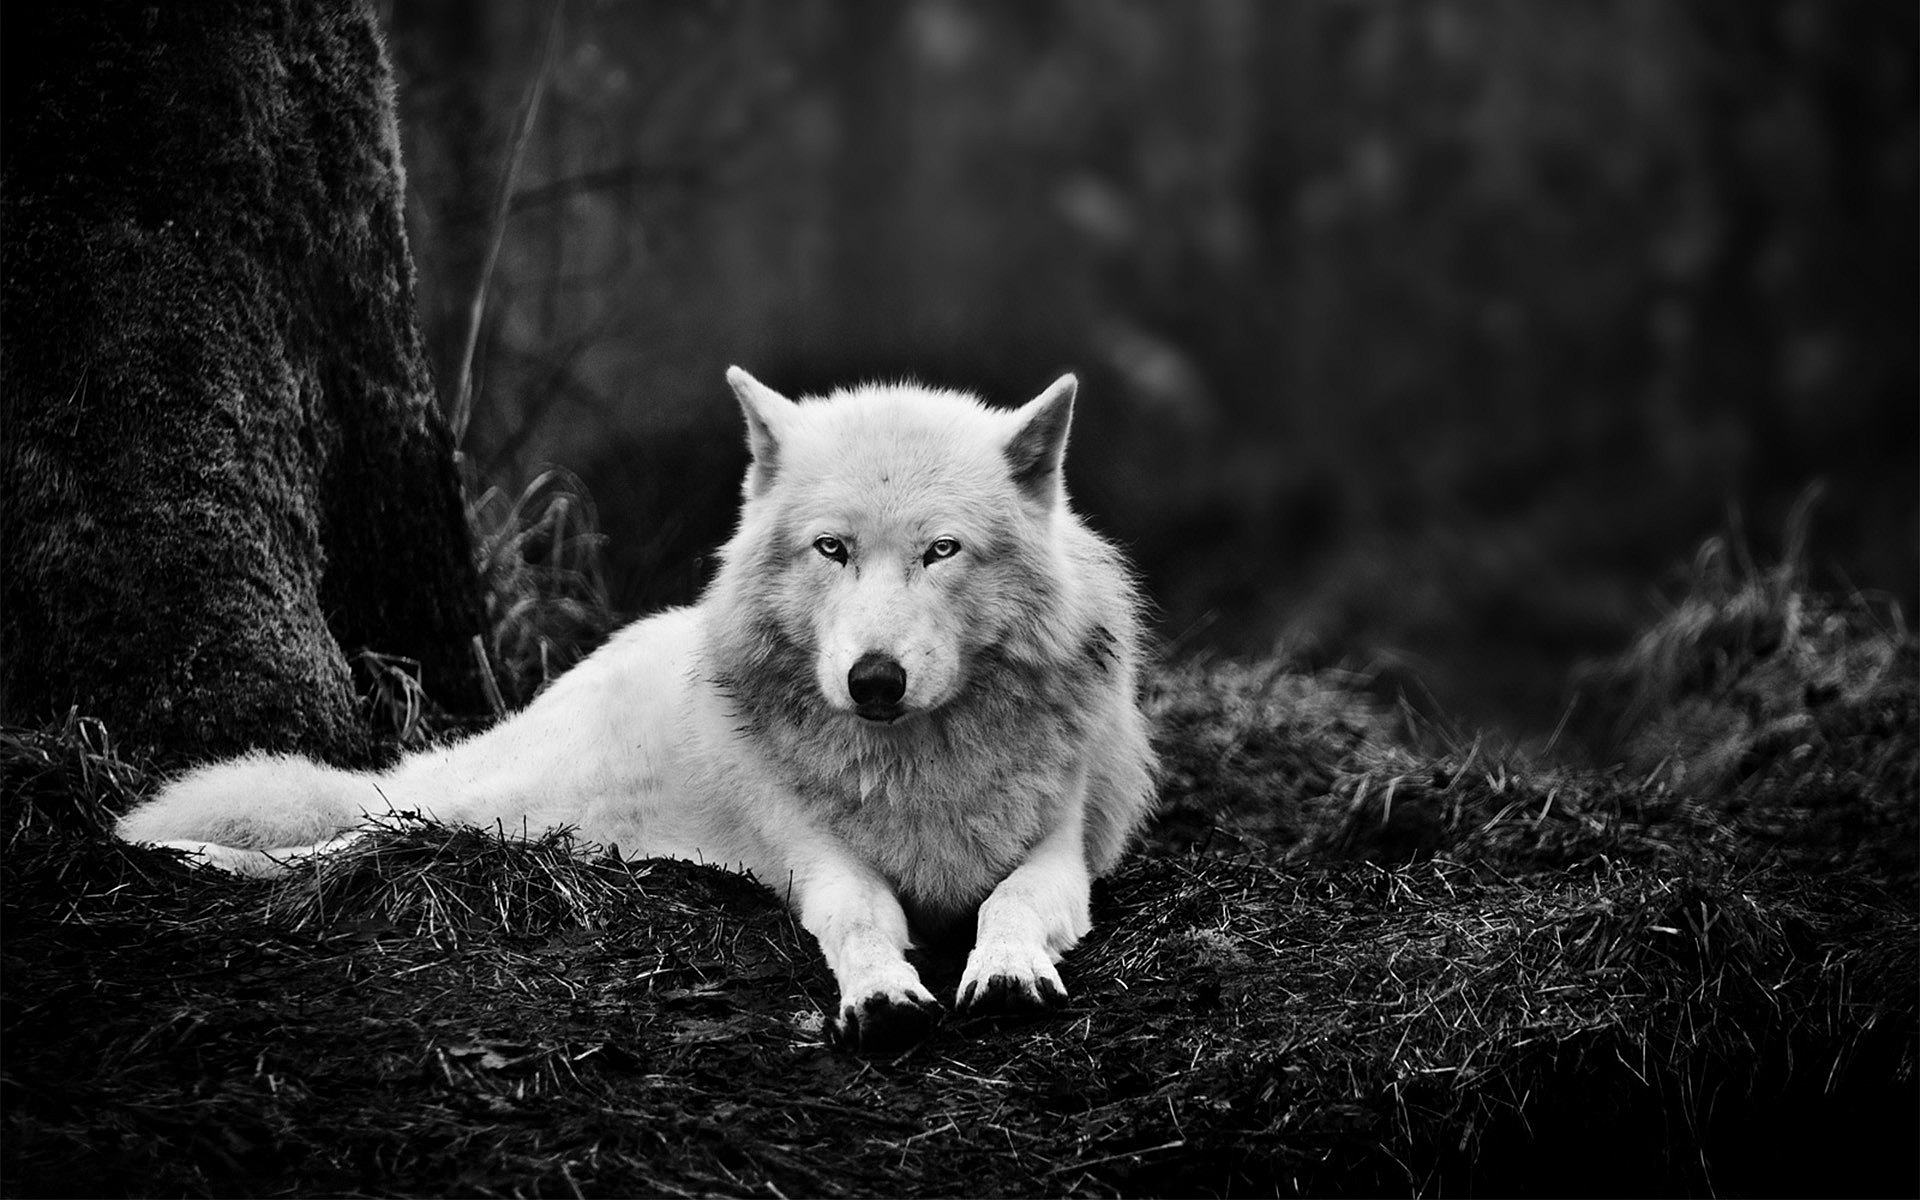 라이브 늑대 벽지 무료,하얀,검정,검정색과 흰색,야생 동물,큰 개자리 루푸스 툰드라 룸